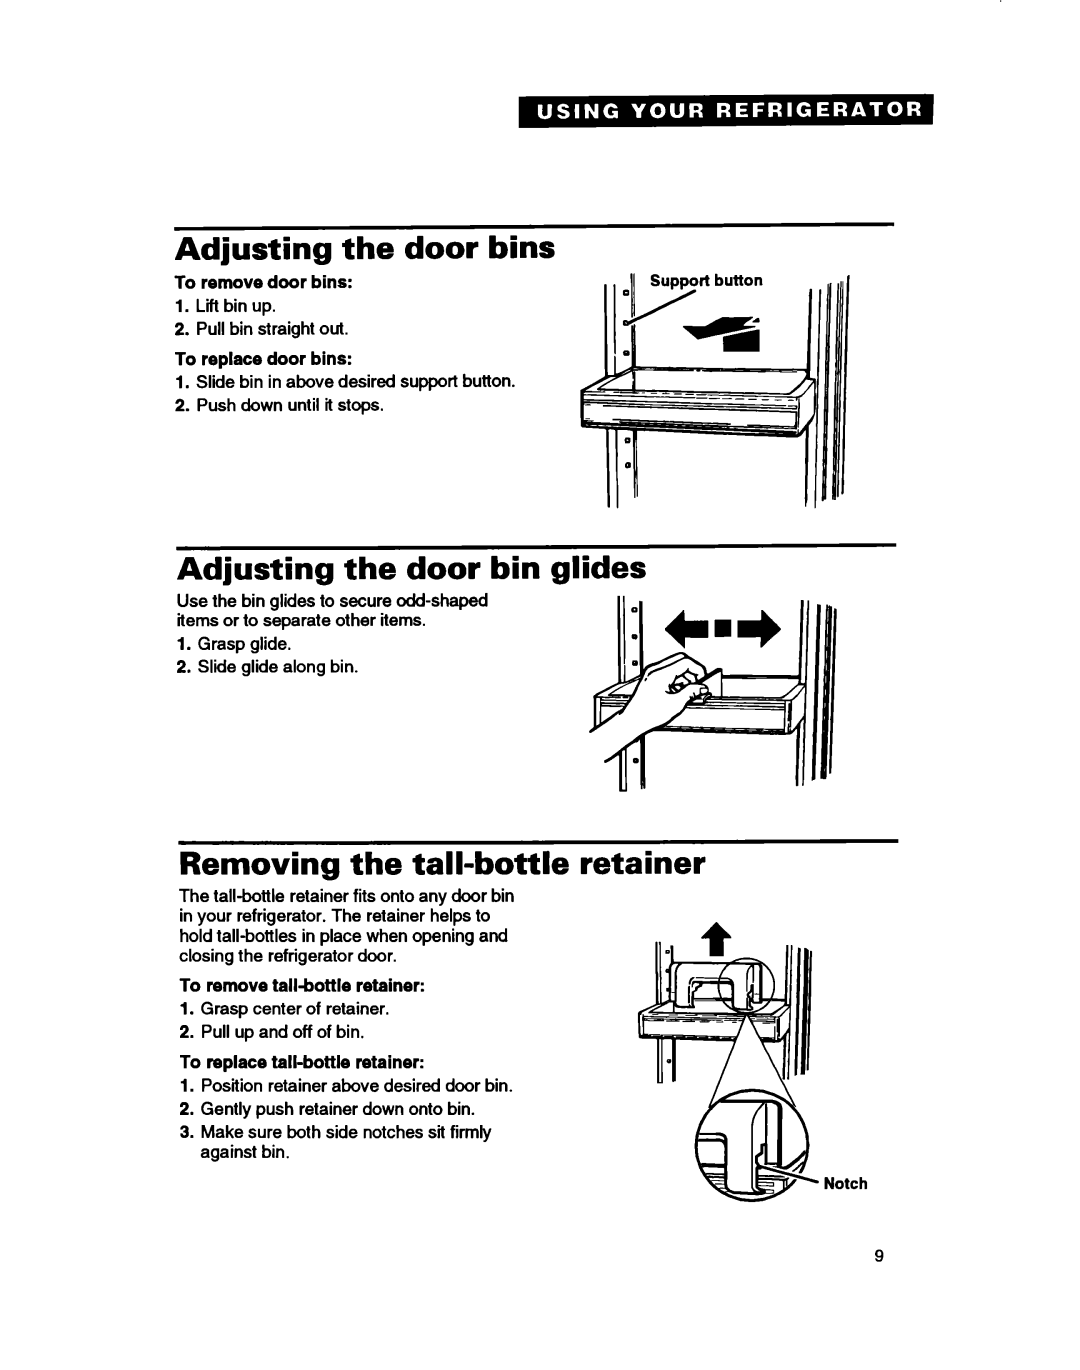 Whirlpool ED22DC warranty Adjusting the door bins, Adjusting the door bin glides, Removing the tall-bottleretainer 